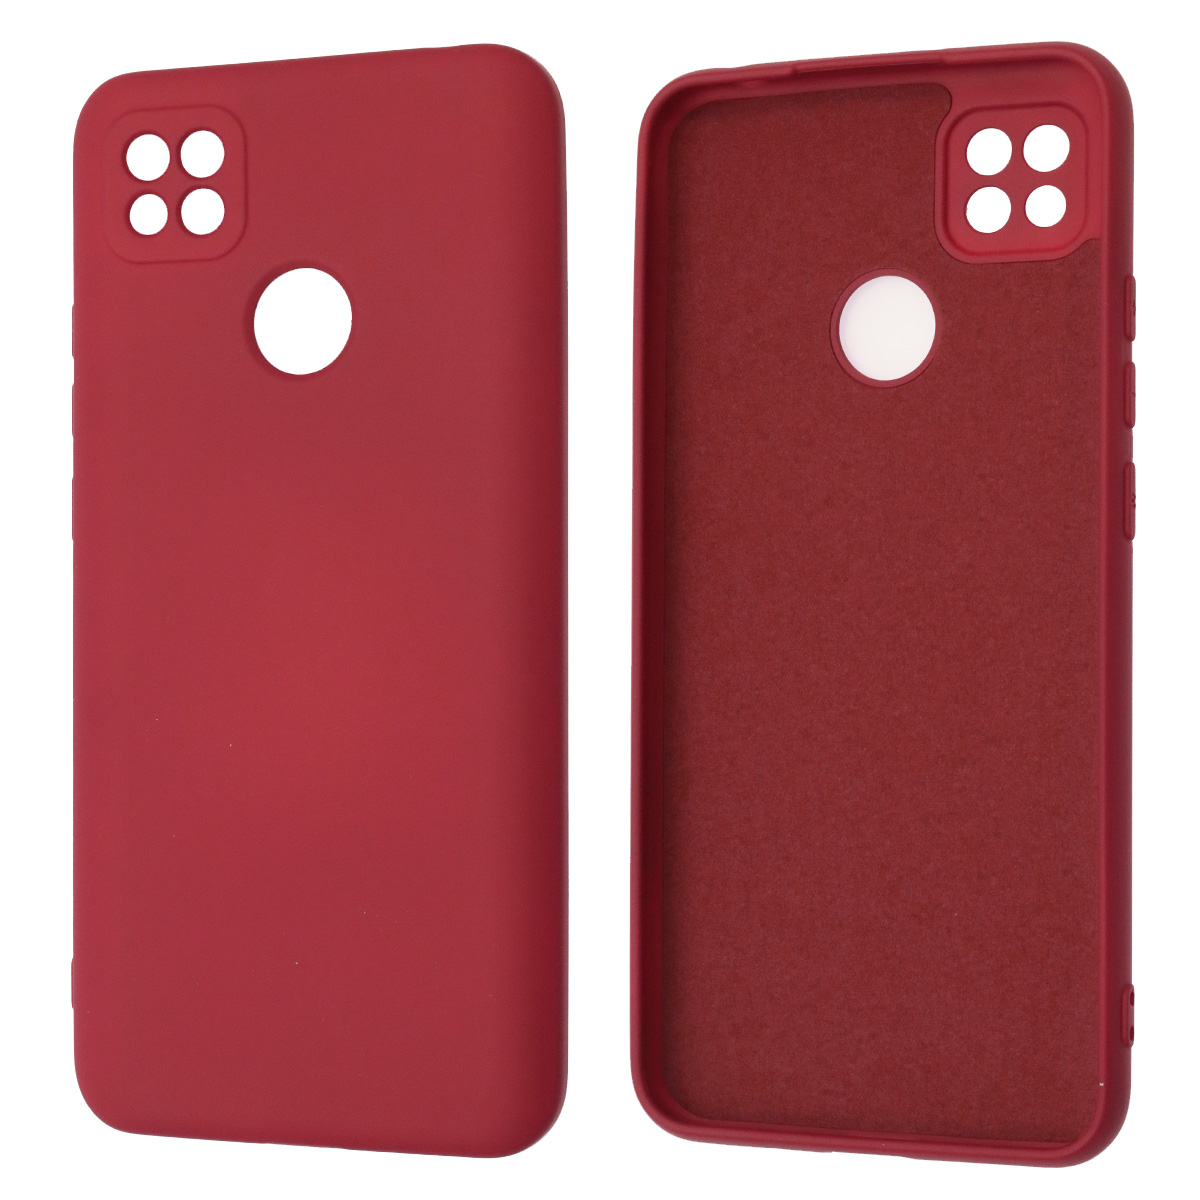 Чехол накладка NANO для XIAOMI Redmi 9C, Redmi 10A, силикон, бархат, цвет бордовый